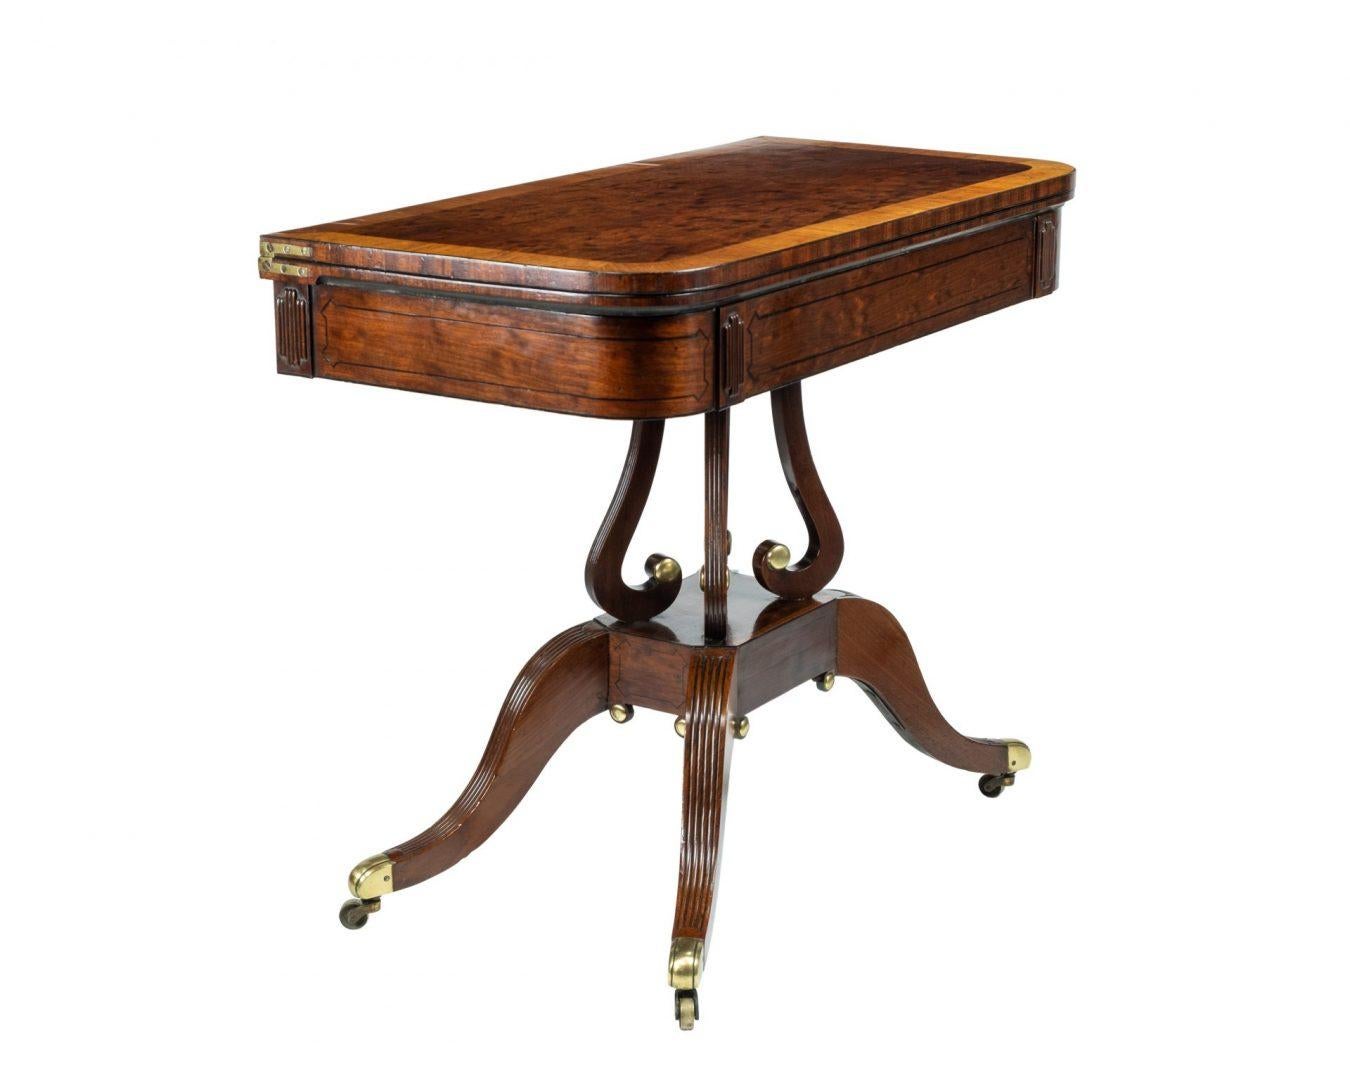 19th Century Regency Mahogany Empire Style Tea Table, circa 1815 Attributed to Thomas Hope